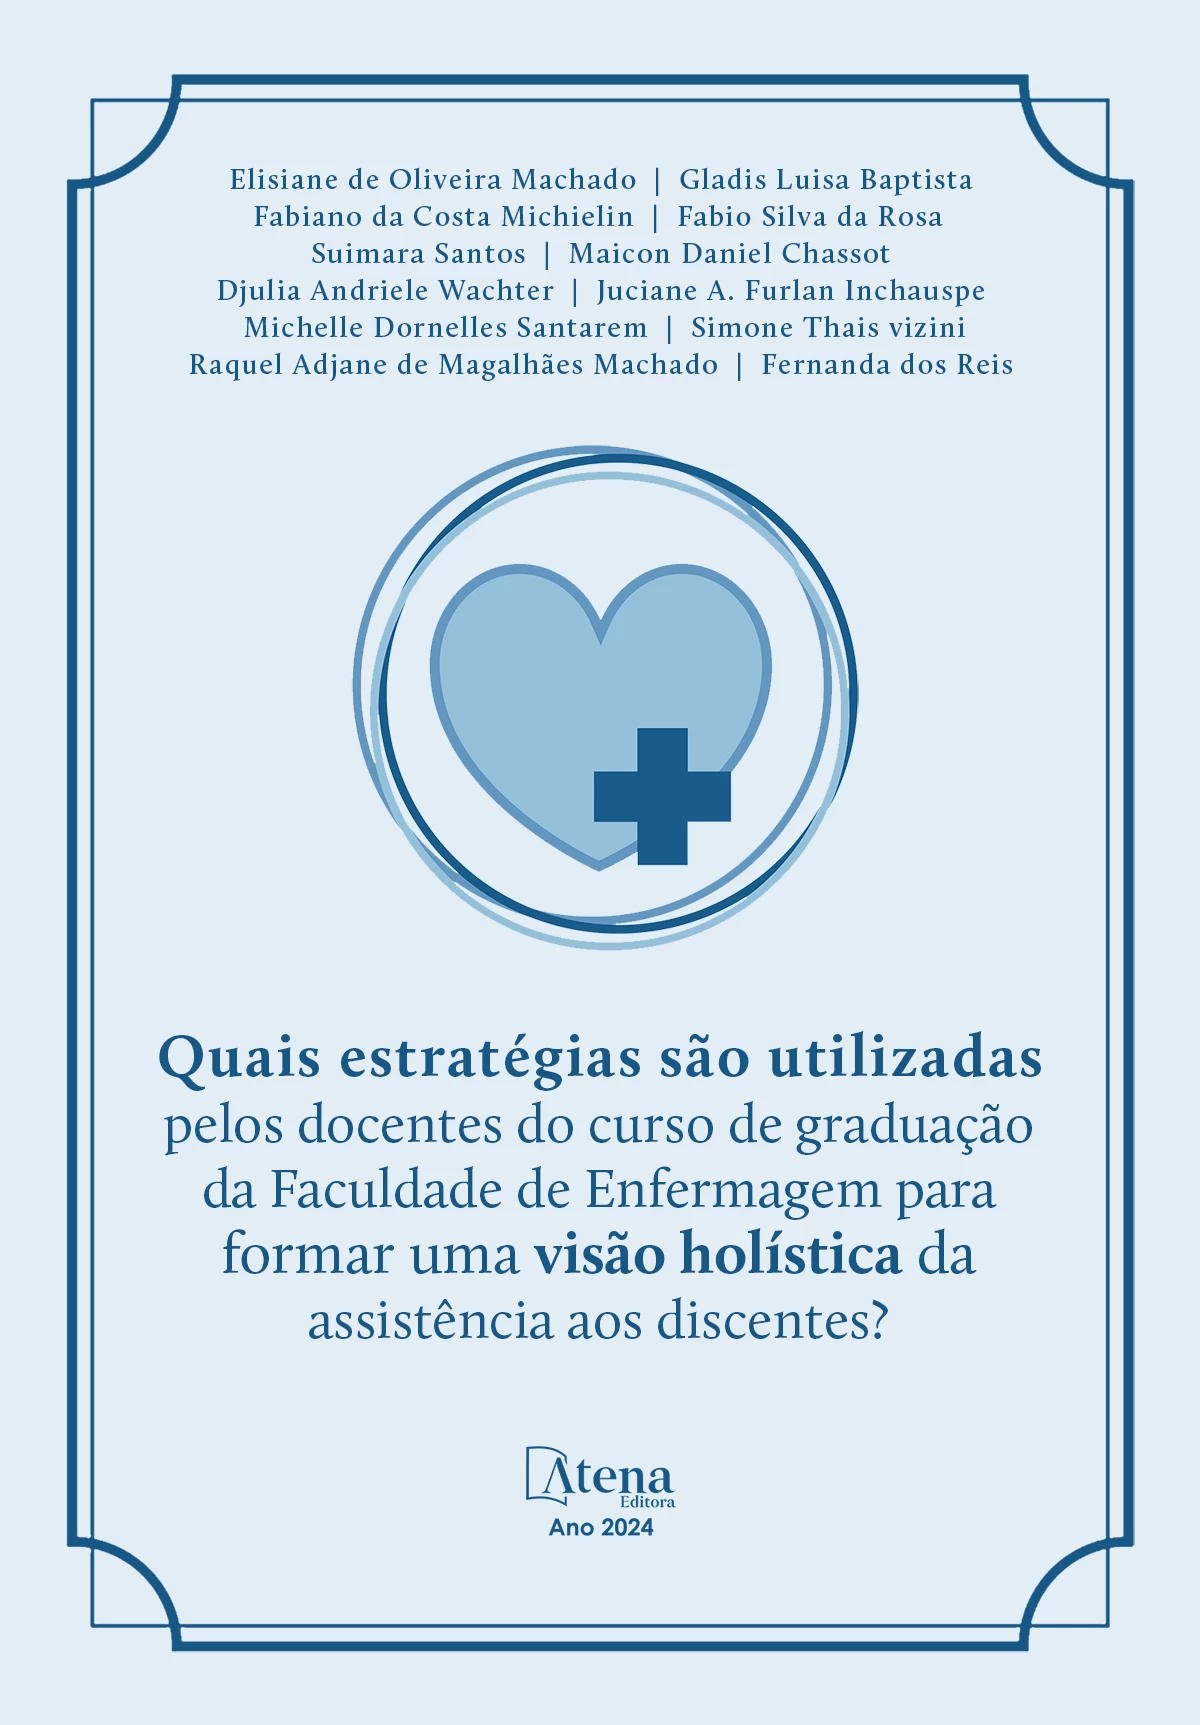 capa do ebook Quais estratégias são utilizadas pelos docentes do curso de graduação da Faculdade de Enfermagem para formar uma visão holística da assistência aos discentes?